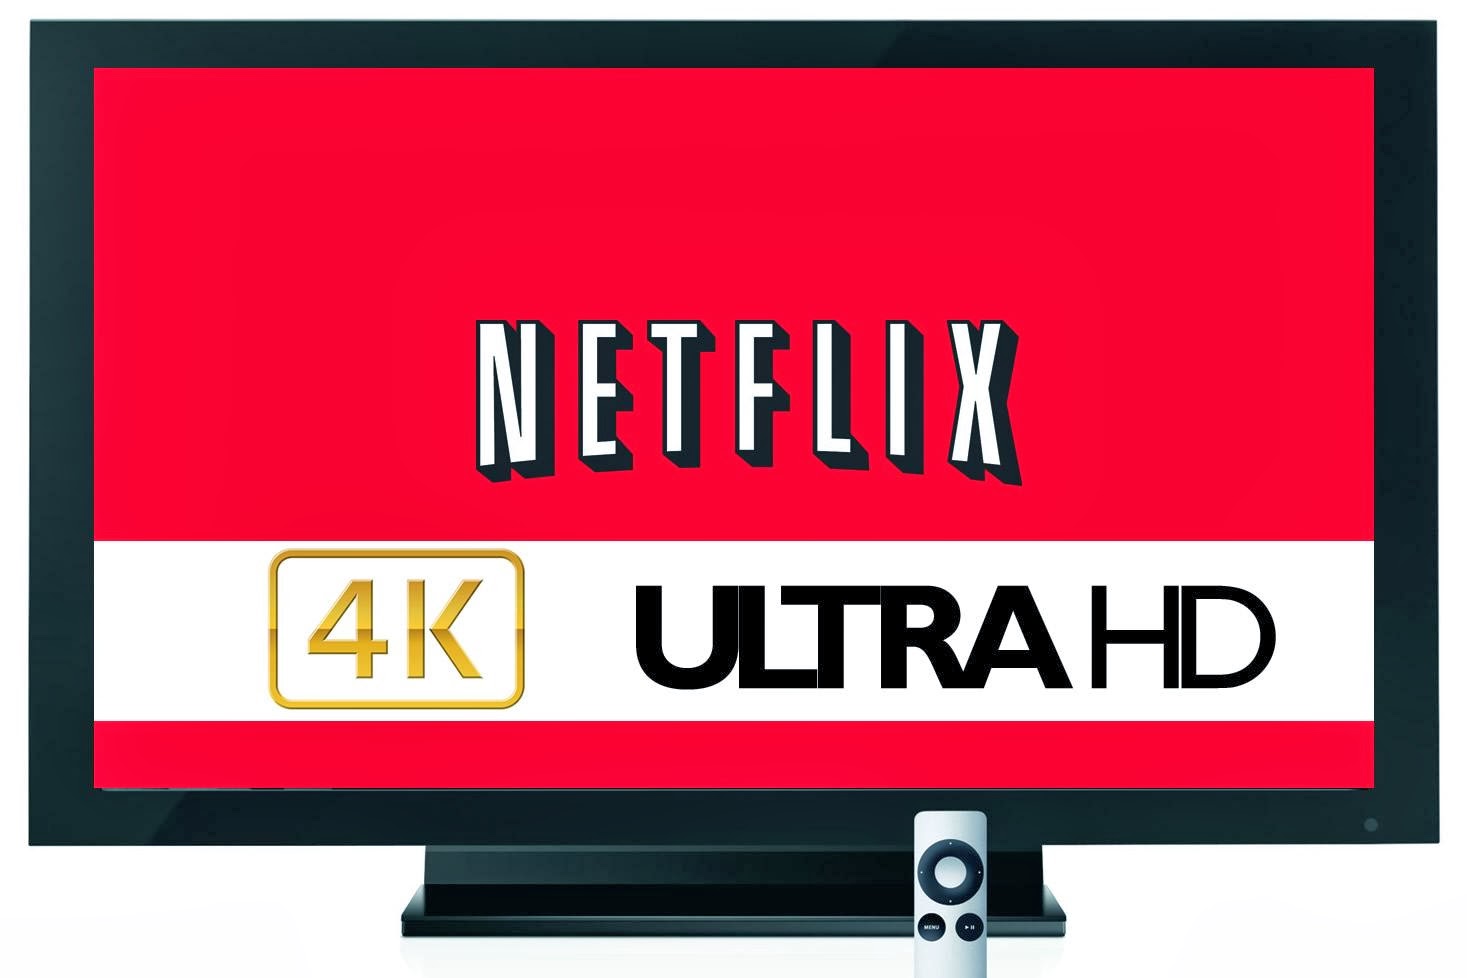 Netflix 4K Ultra HD